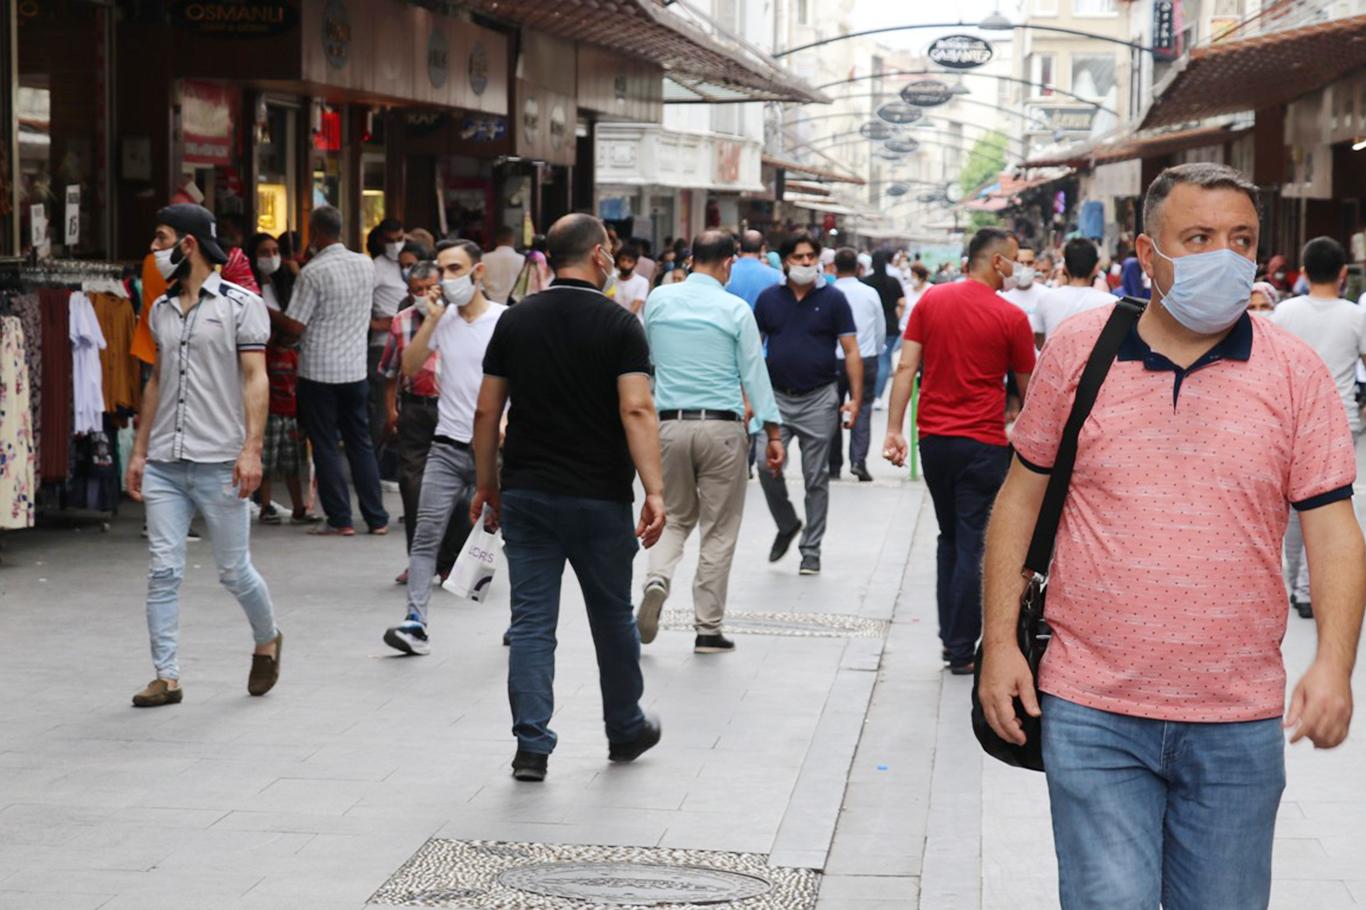  Gaziantep’te Covid-19 tedbirlerine uymayan binlerce kişiye para cezası verildi